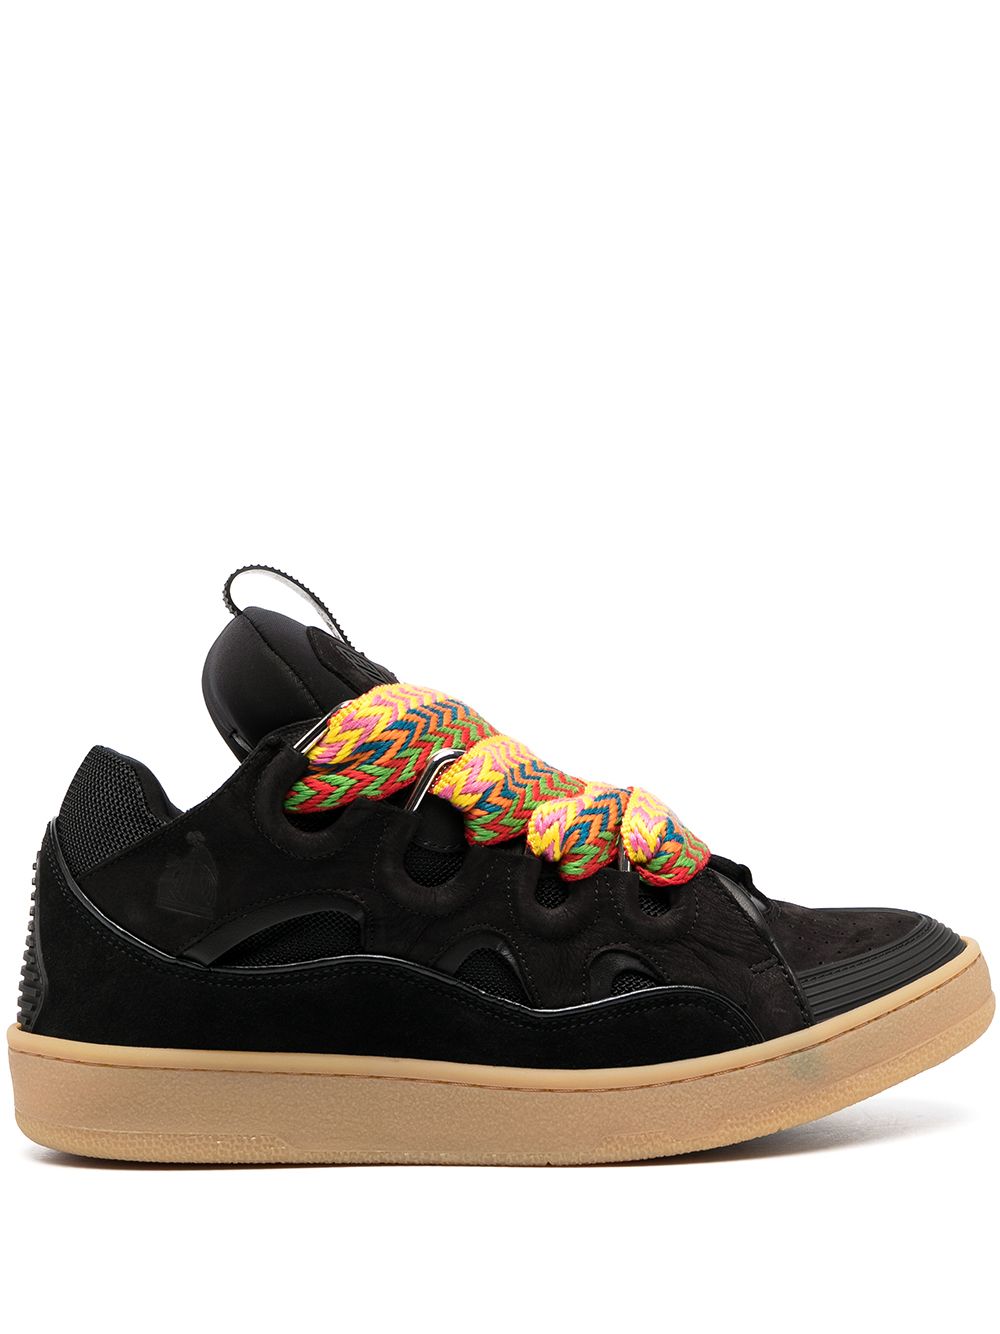 Black curb sneaker